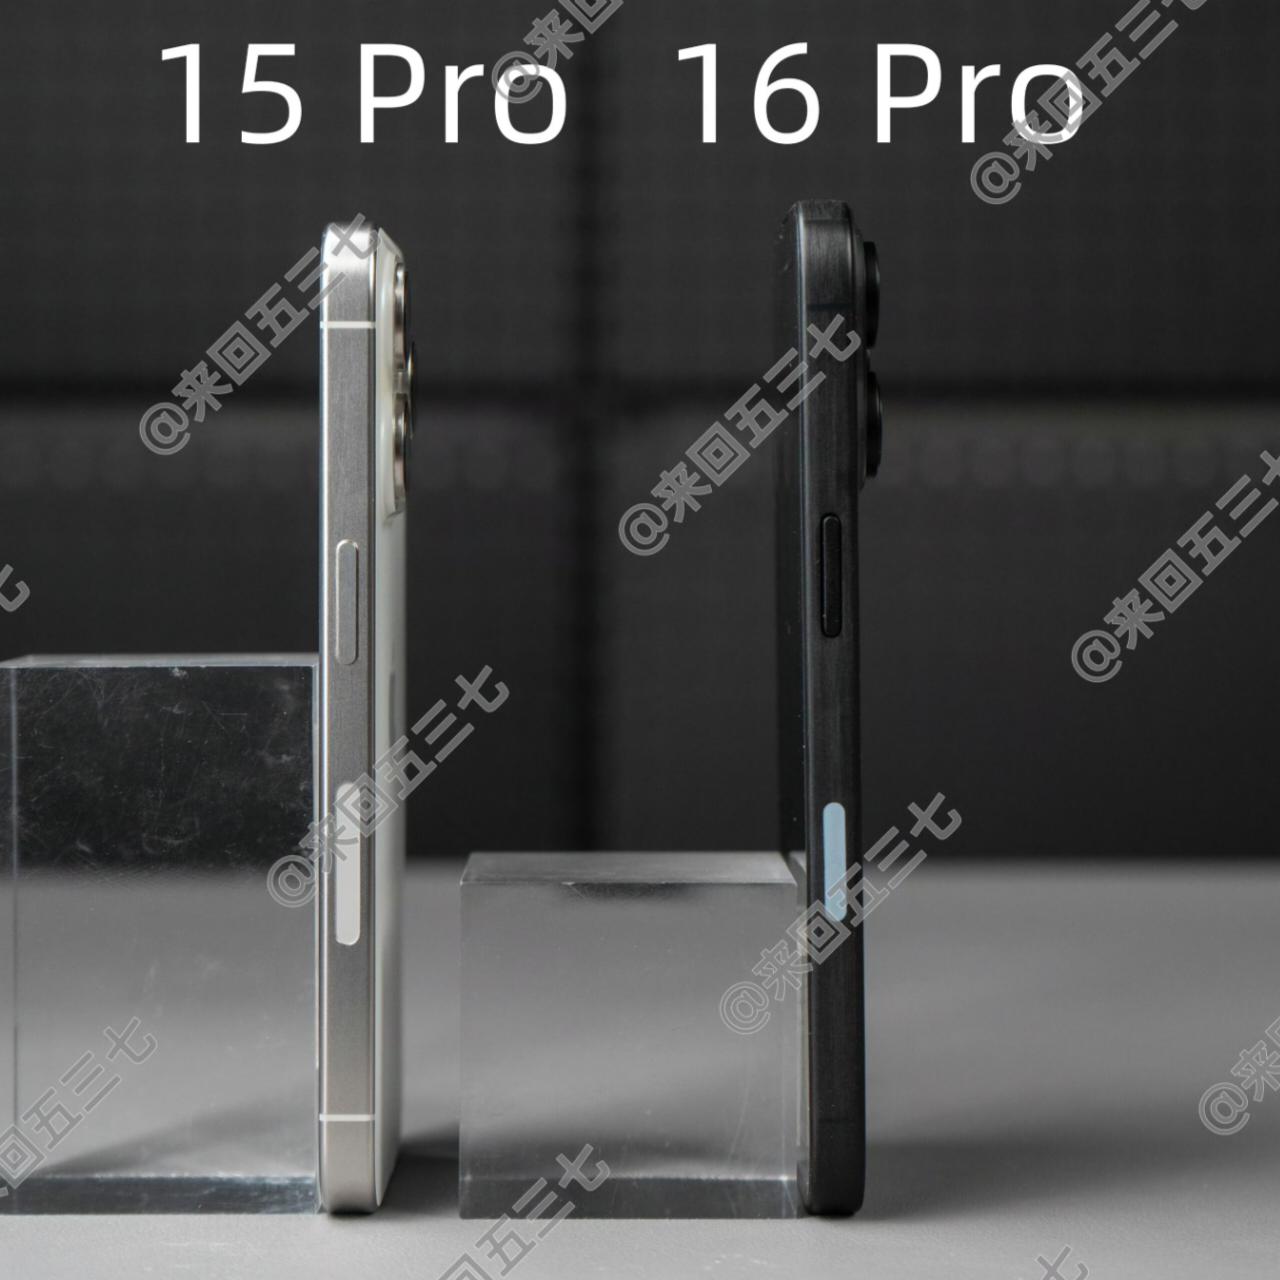 Perbedaan iPhone 16 Pro dan iPhone 15 Pro